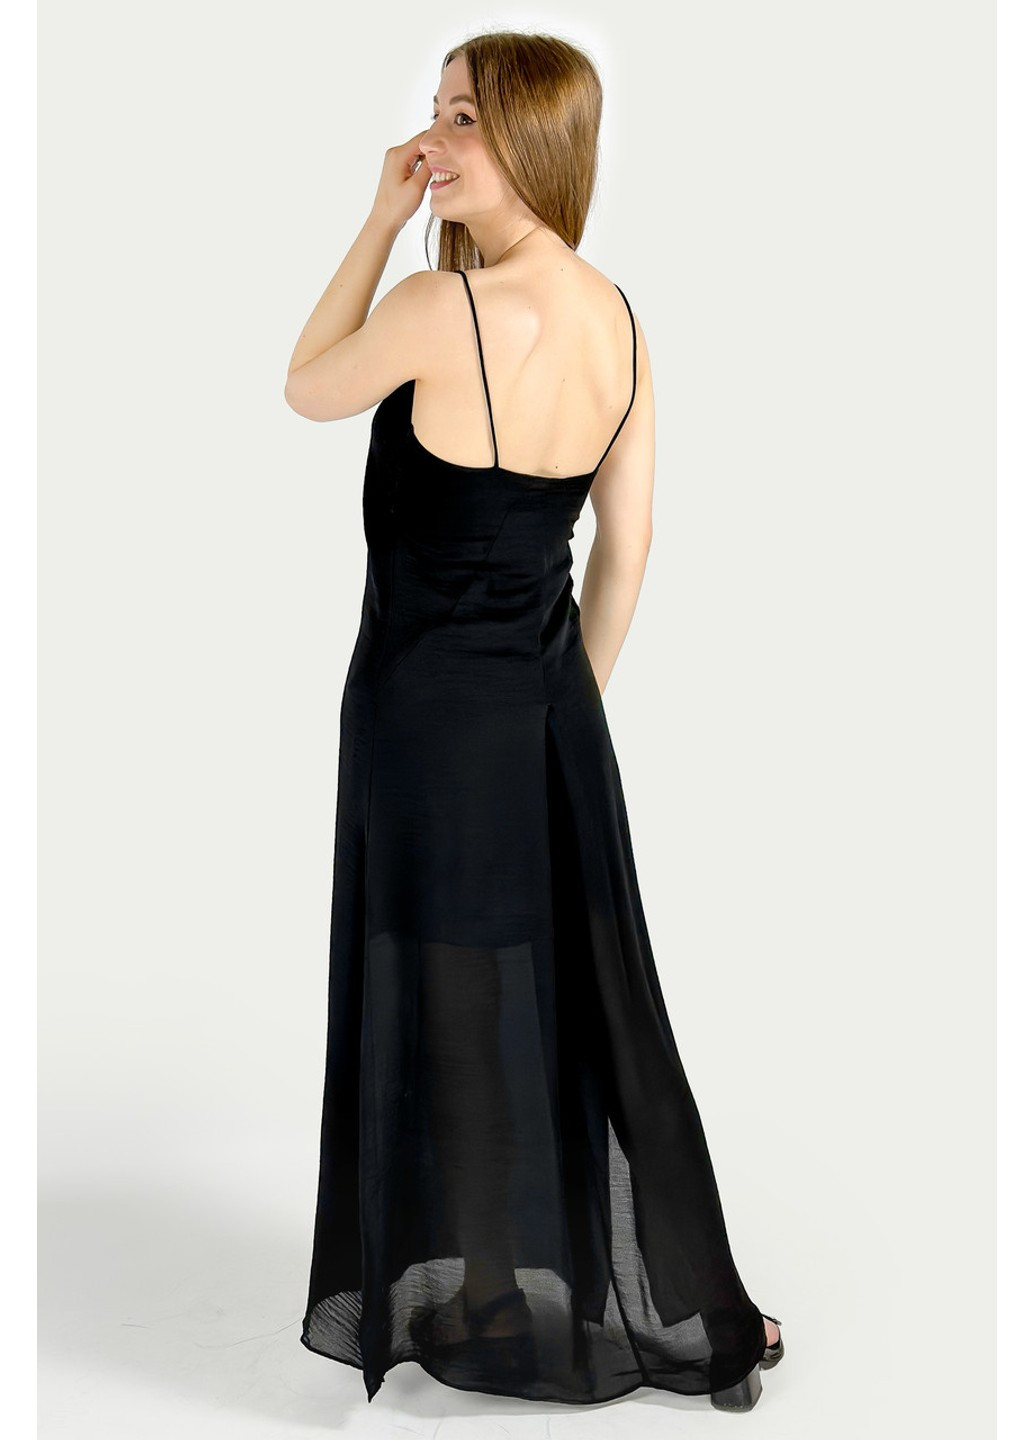 Черное вечернее платье 7700/394/800 платье-комбинация Zara однотонное